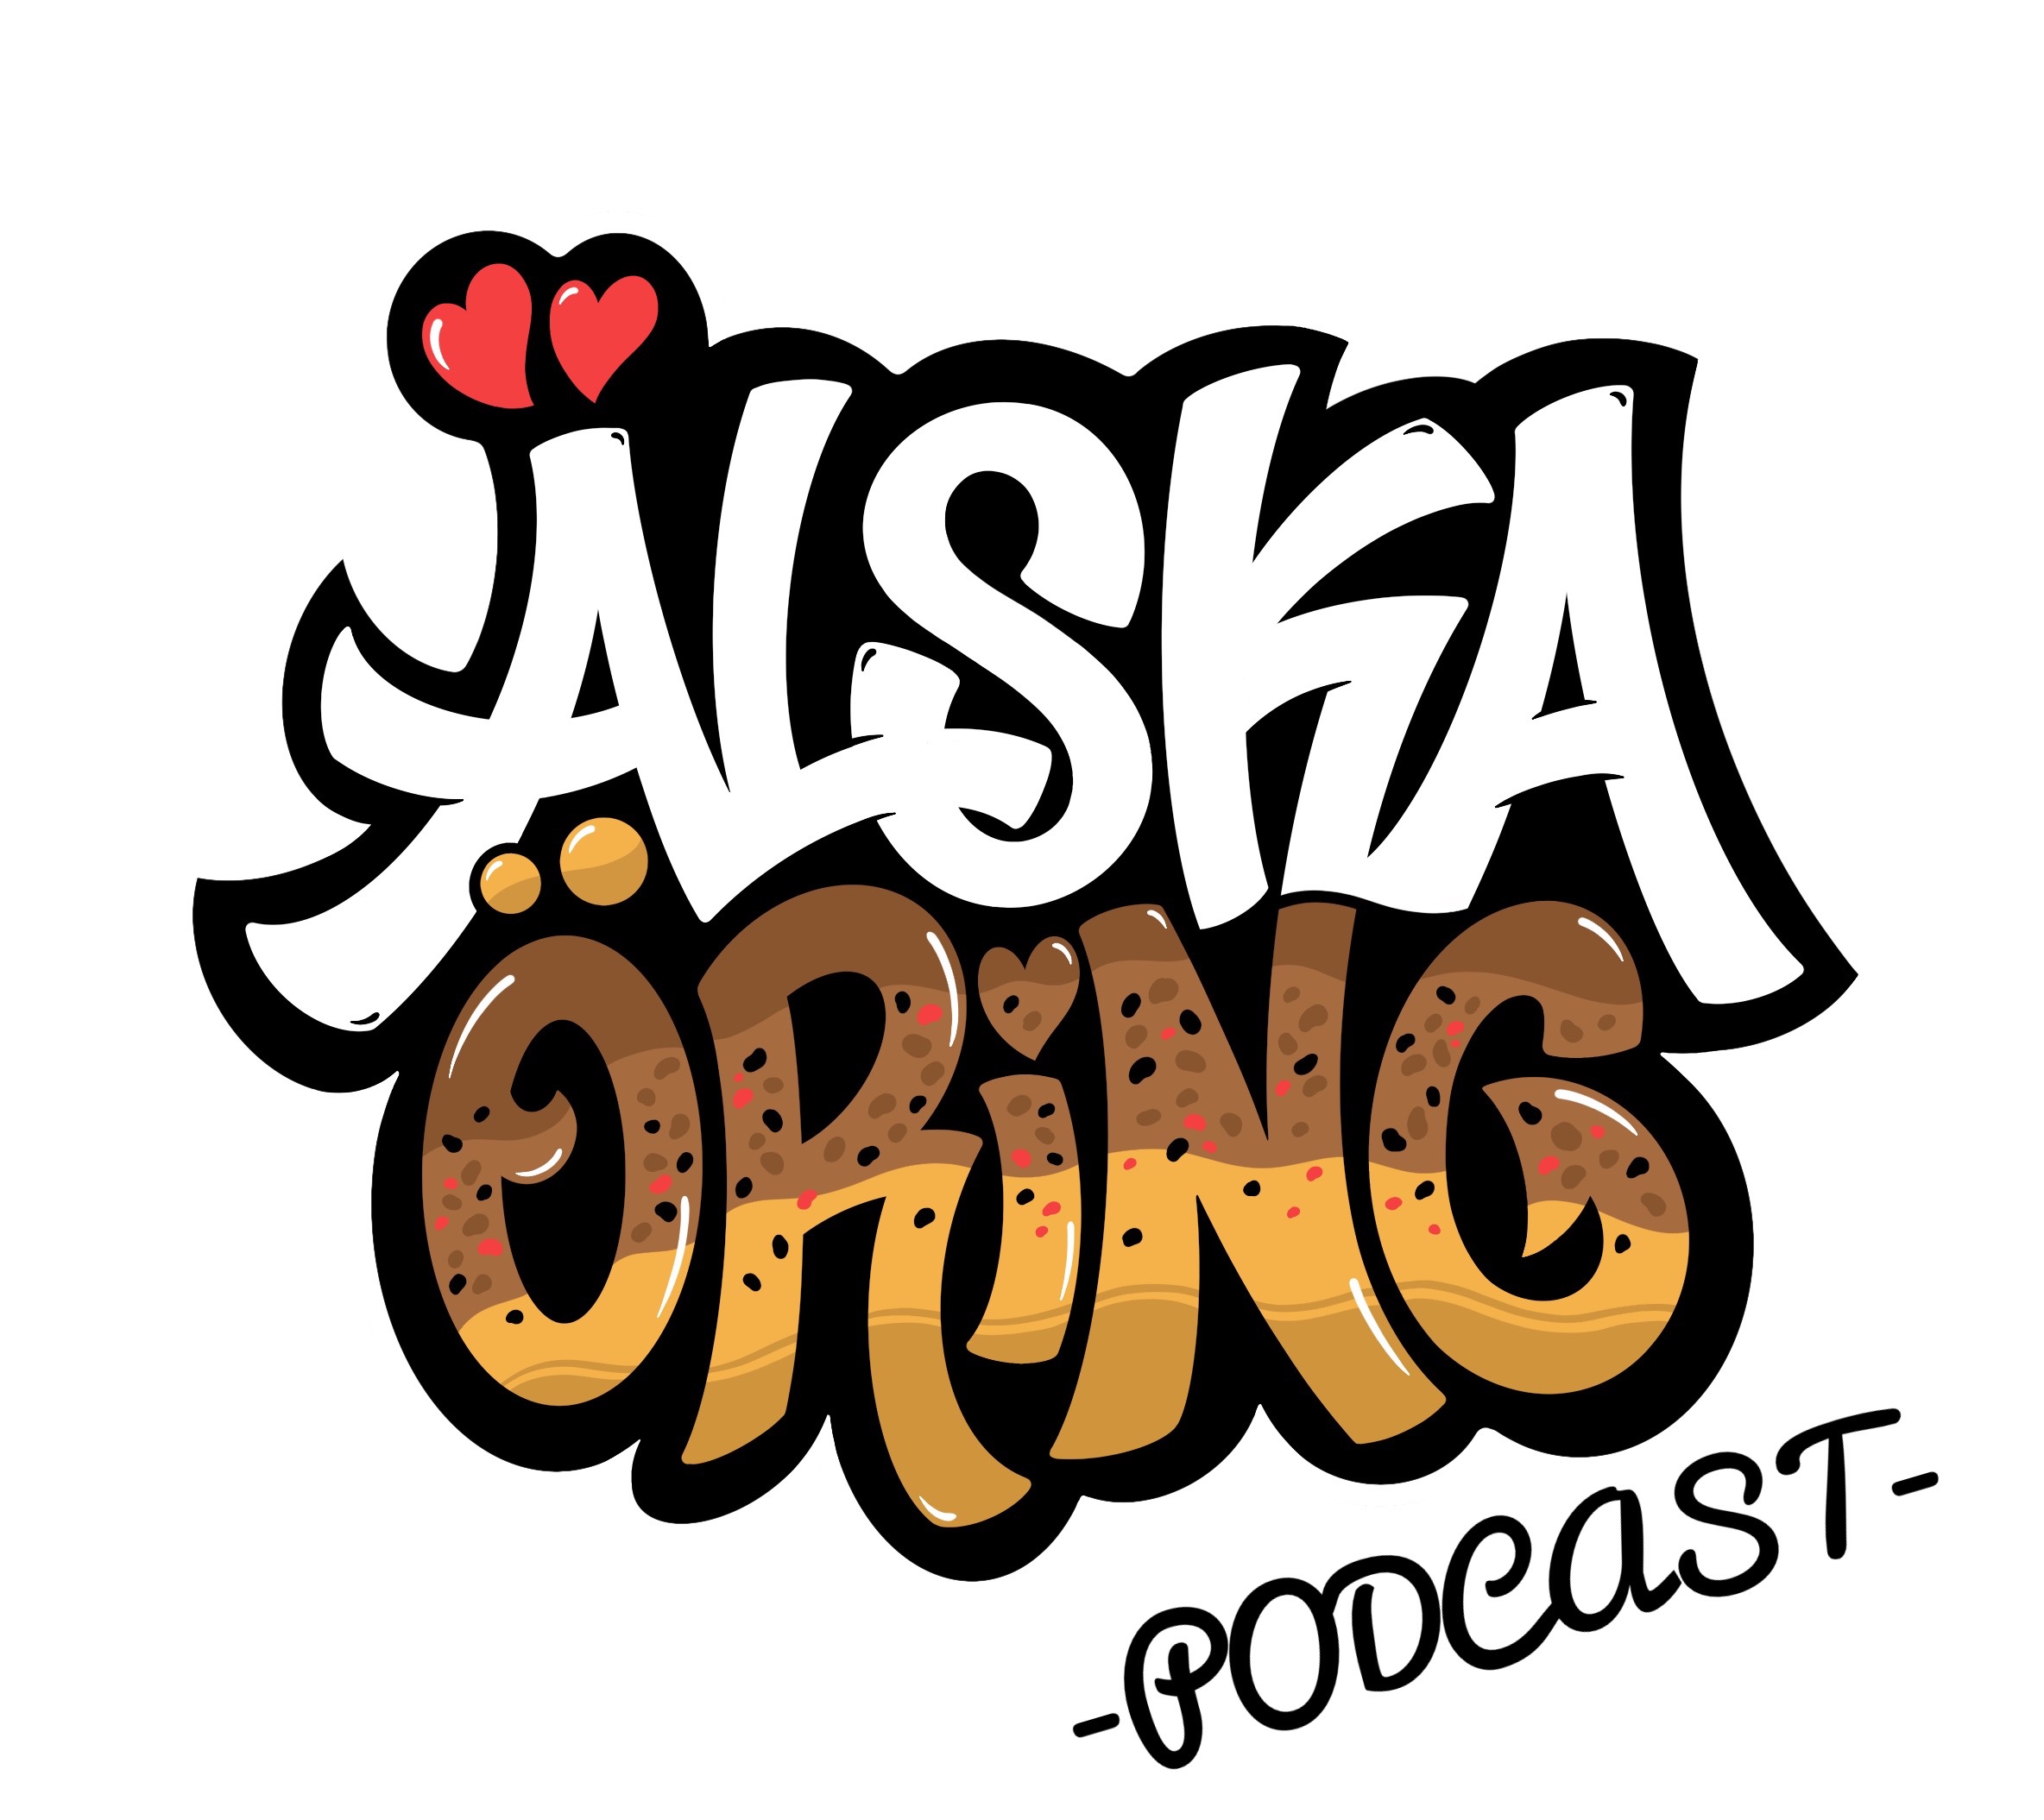 Älska Öring Podcast - 5 tips för att fånga en stor öring på torrfluga